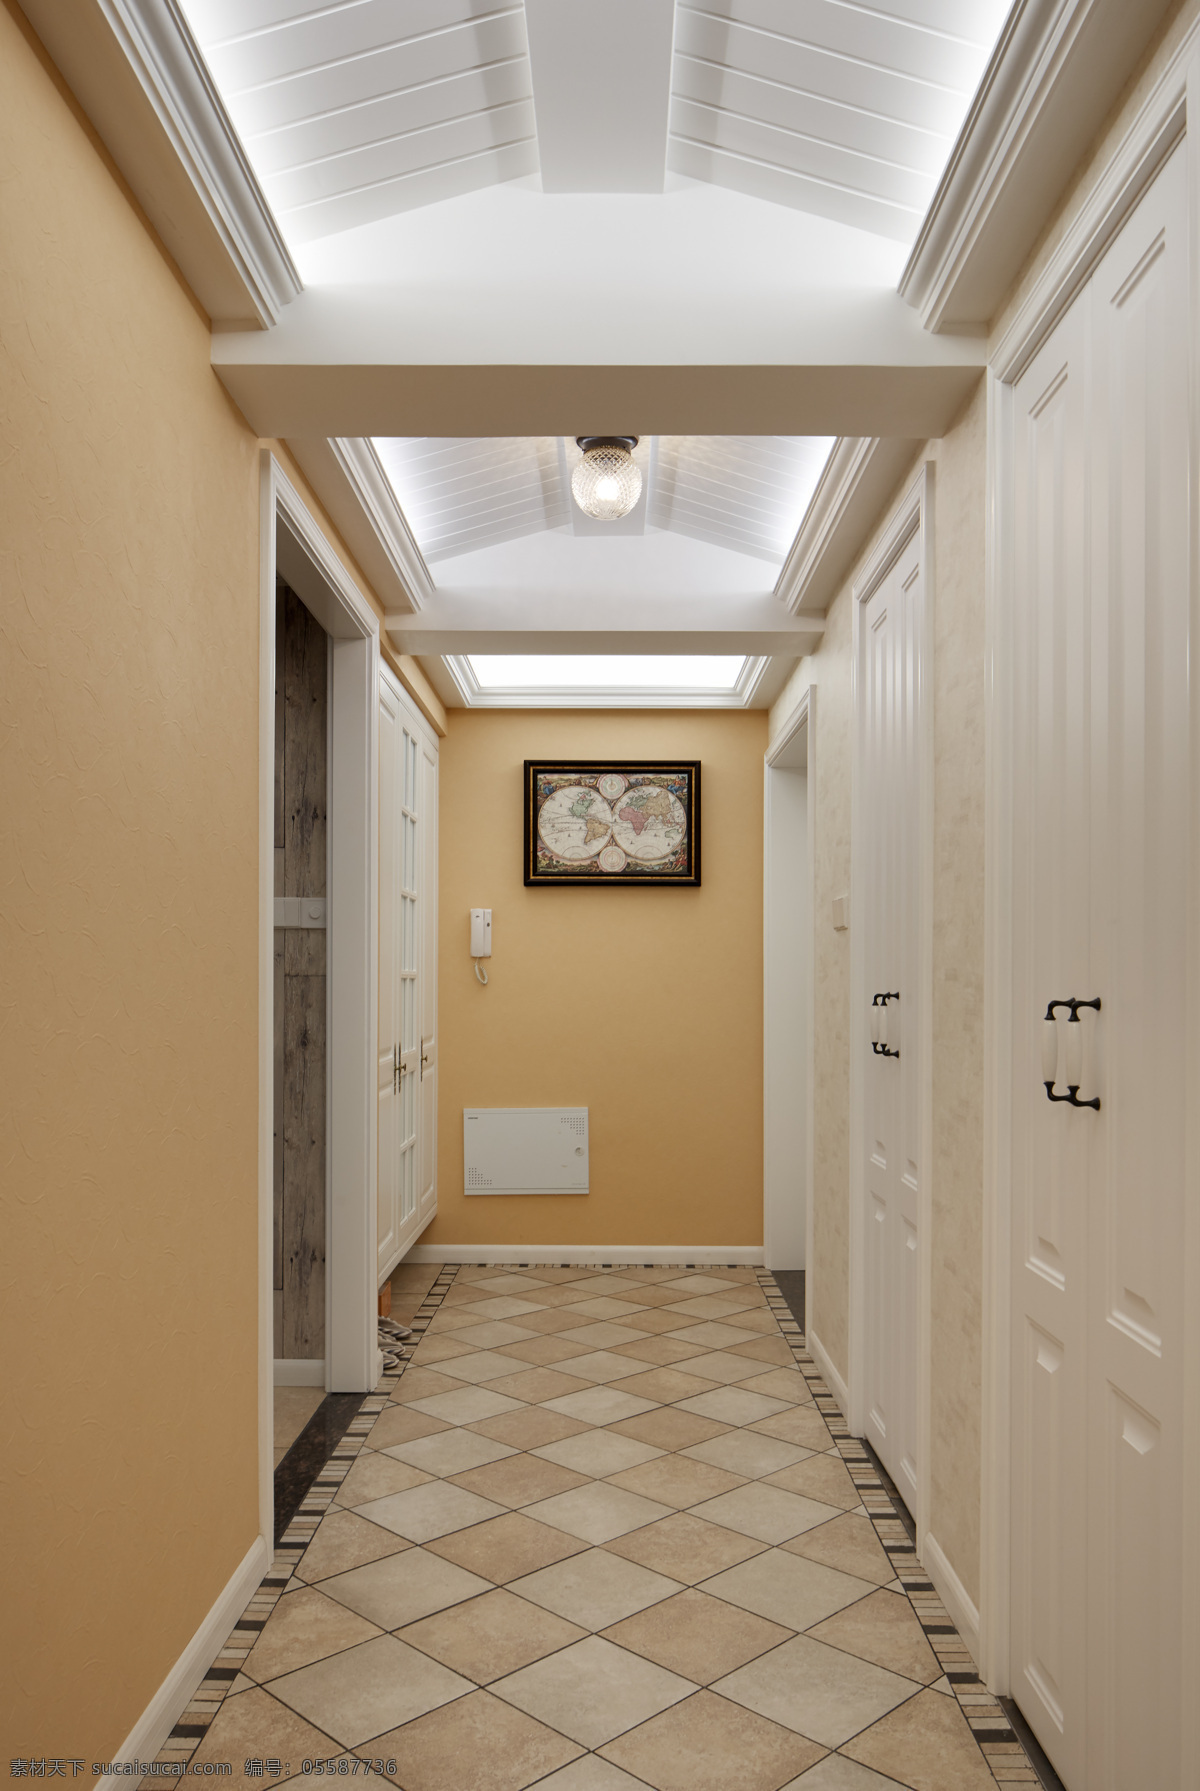 现代 温馨 客厅 走廊 格子 地板 室内装修 效果图 白色吊顶 壁灯 纯色背景墙 格子地板 客厅装修